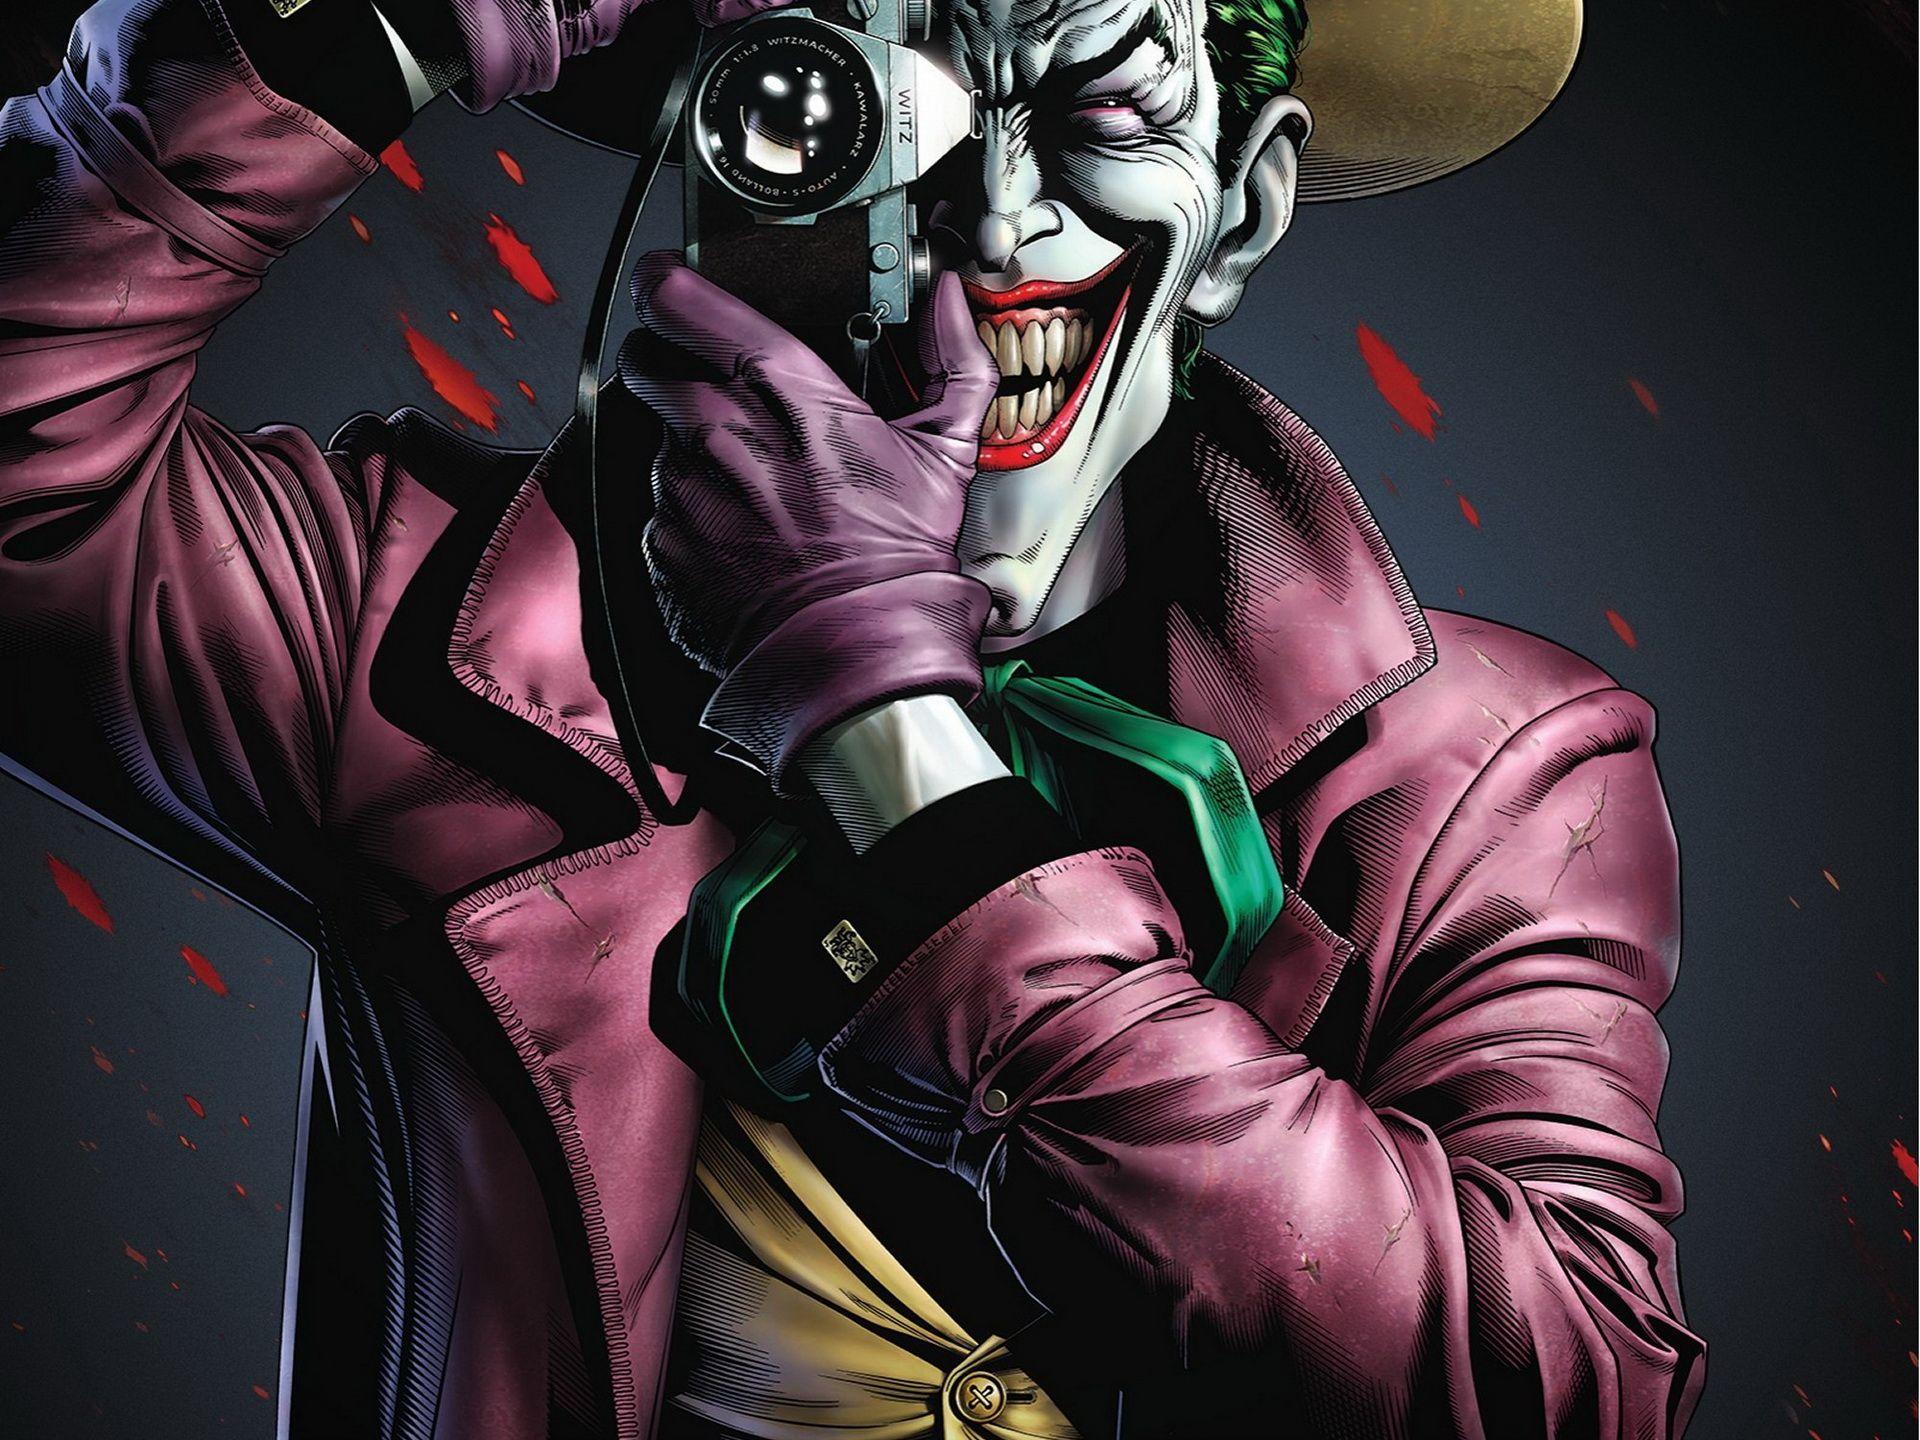 Joker Killing Joke 4K Ultra HD Wallpaper Free Joker Killing